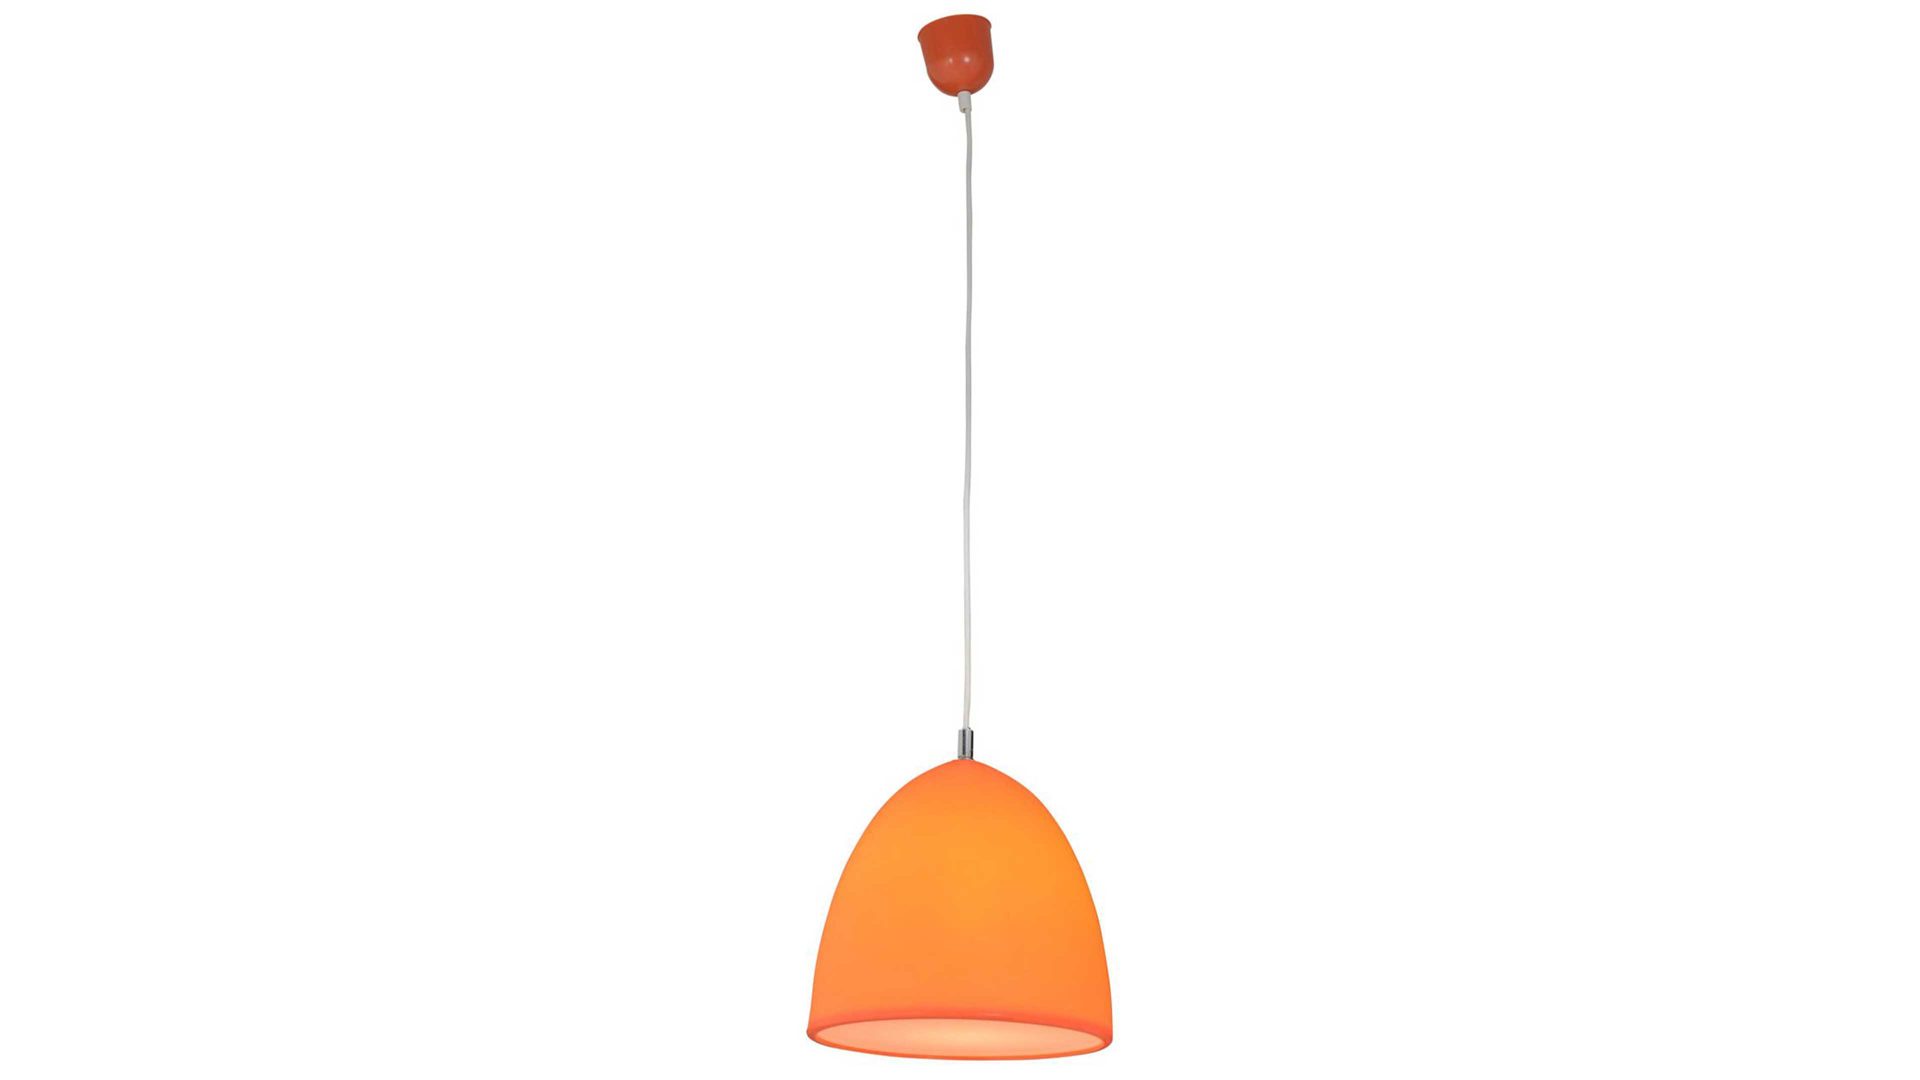 https://shop.breitwieser.de/online-shop/produktbild-265996/kaufen-Wohnland-Breitwieser/Lampen-und-Leuchten-A-Z-Pendelleuchte-Naeve-aus-Kunststoff-in-Orange-naeve-Silikon-Pendelleuchte-Fancy-oranges-Silikon-Durchmesser-ca-25-cm-guenstiger.jpg